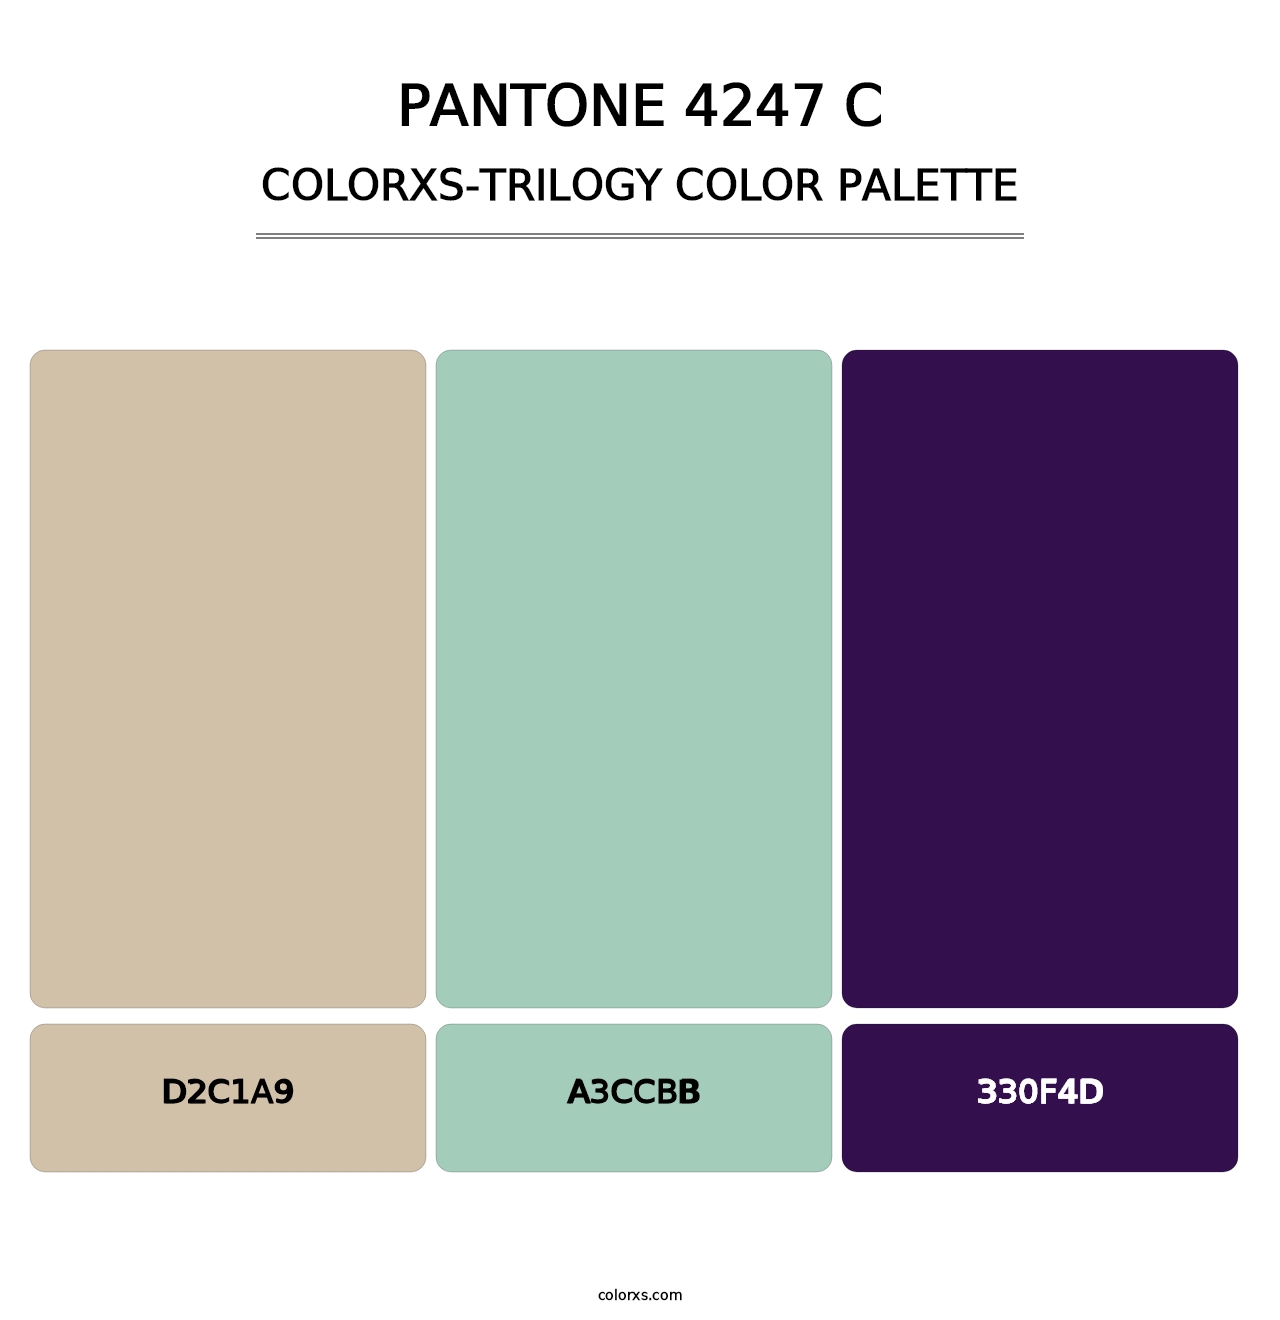 PANTONE 4247 C - Colorxs Trilogy Palette